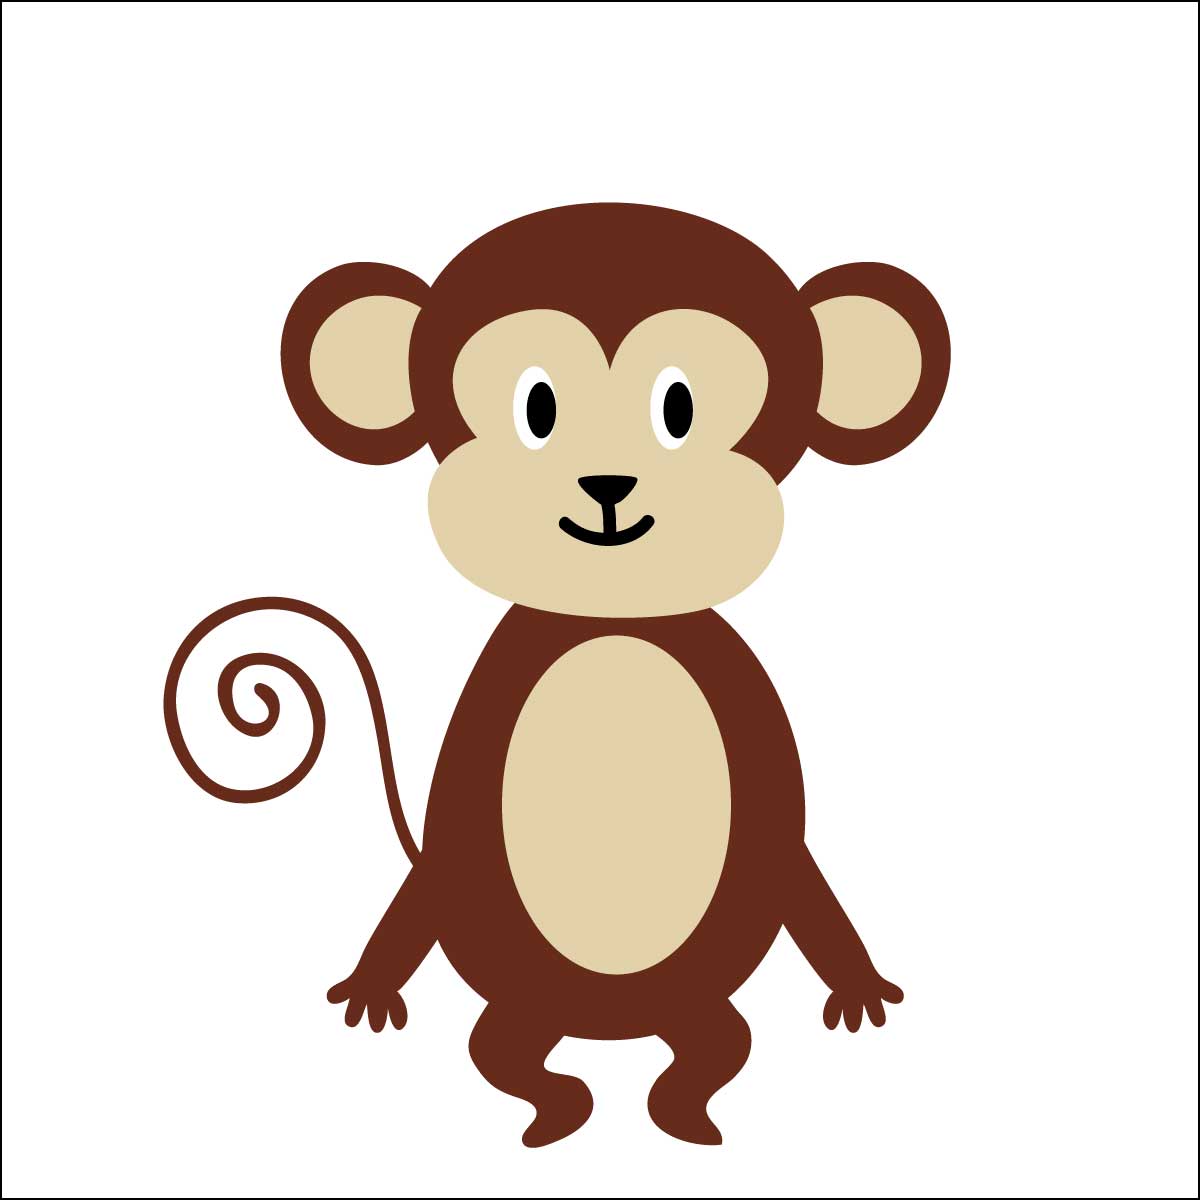 サルキャラクター人気ランキング 猿 チンパンジー オランウータンも 11 15位 ランキングー